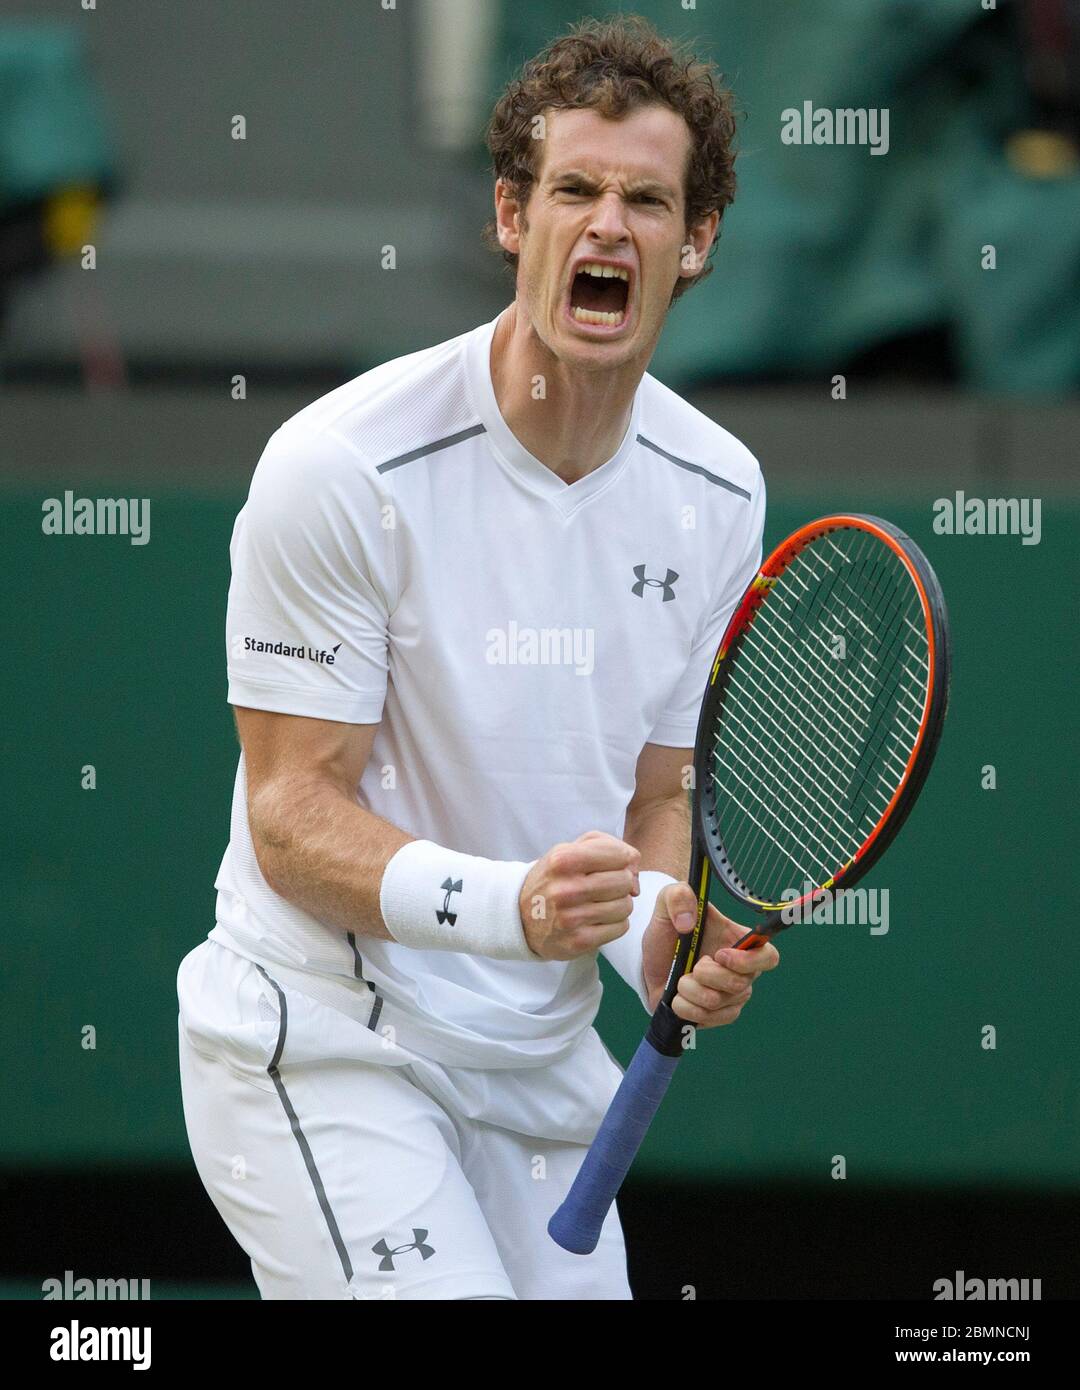 4 juillet 2015, Wimbledon Championships, Londres. Hommes célibataires troisième tour, Center court, Andy Murray (GBR) fête contre Andreas Seppi (ITA) Banque D'Images